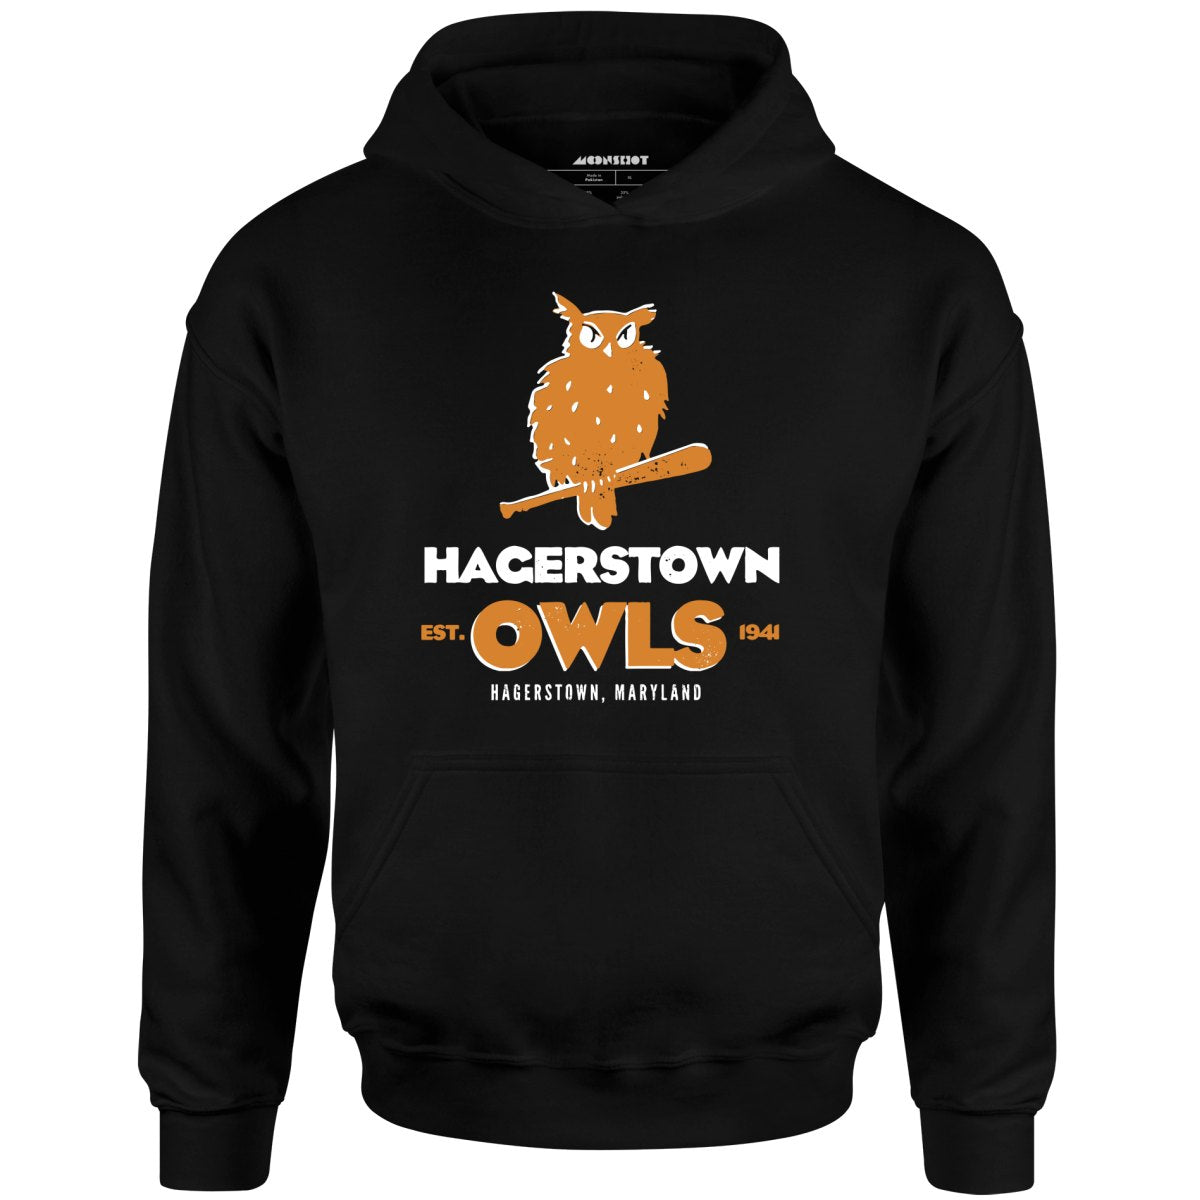 Hagerstown Owls - Maryland - Vintage Defunct Baseball Teams - Unisex Hoodie